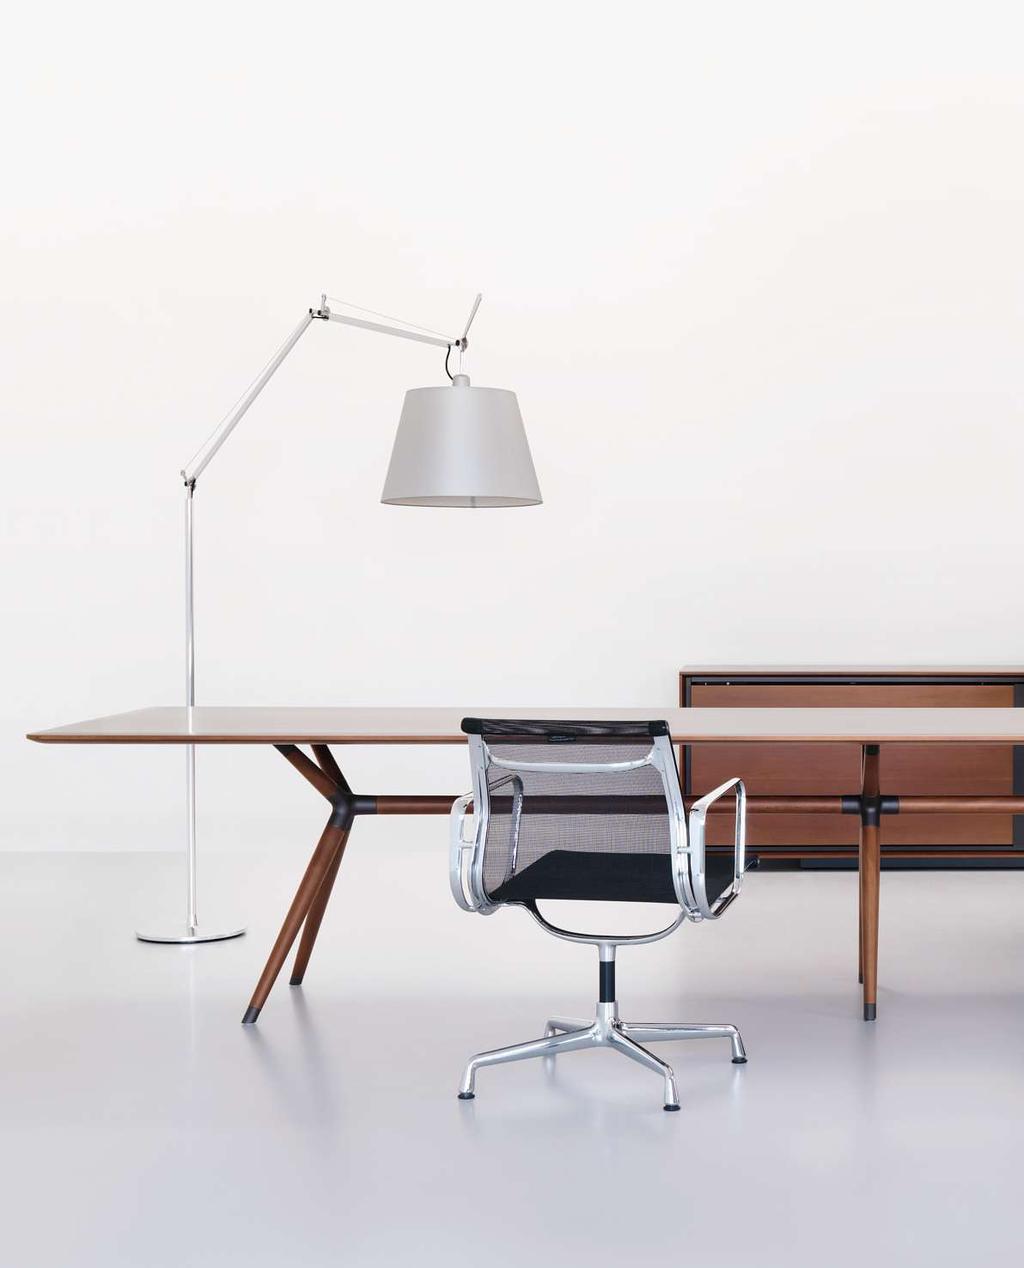 X2 Office-Kombination: Office-Tisch mit Mittelfuss, Tischplatte und Holmen in Platane massiv, Metallteile in Rost metallic lackiert.